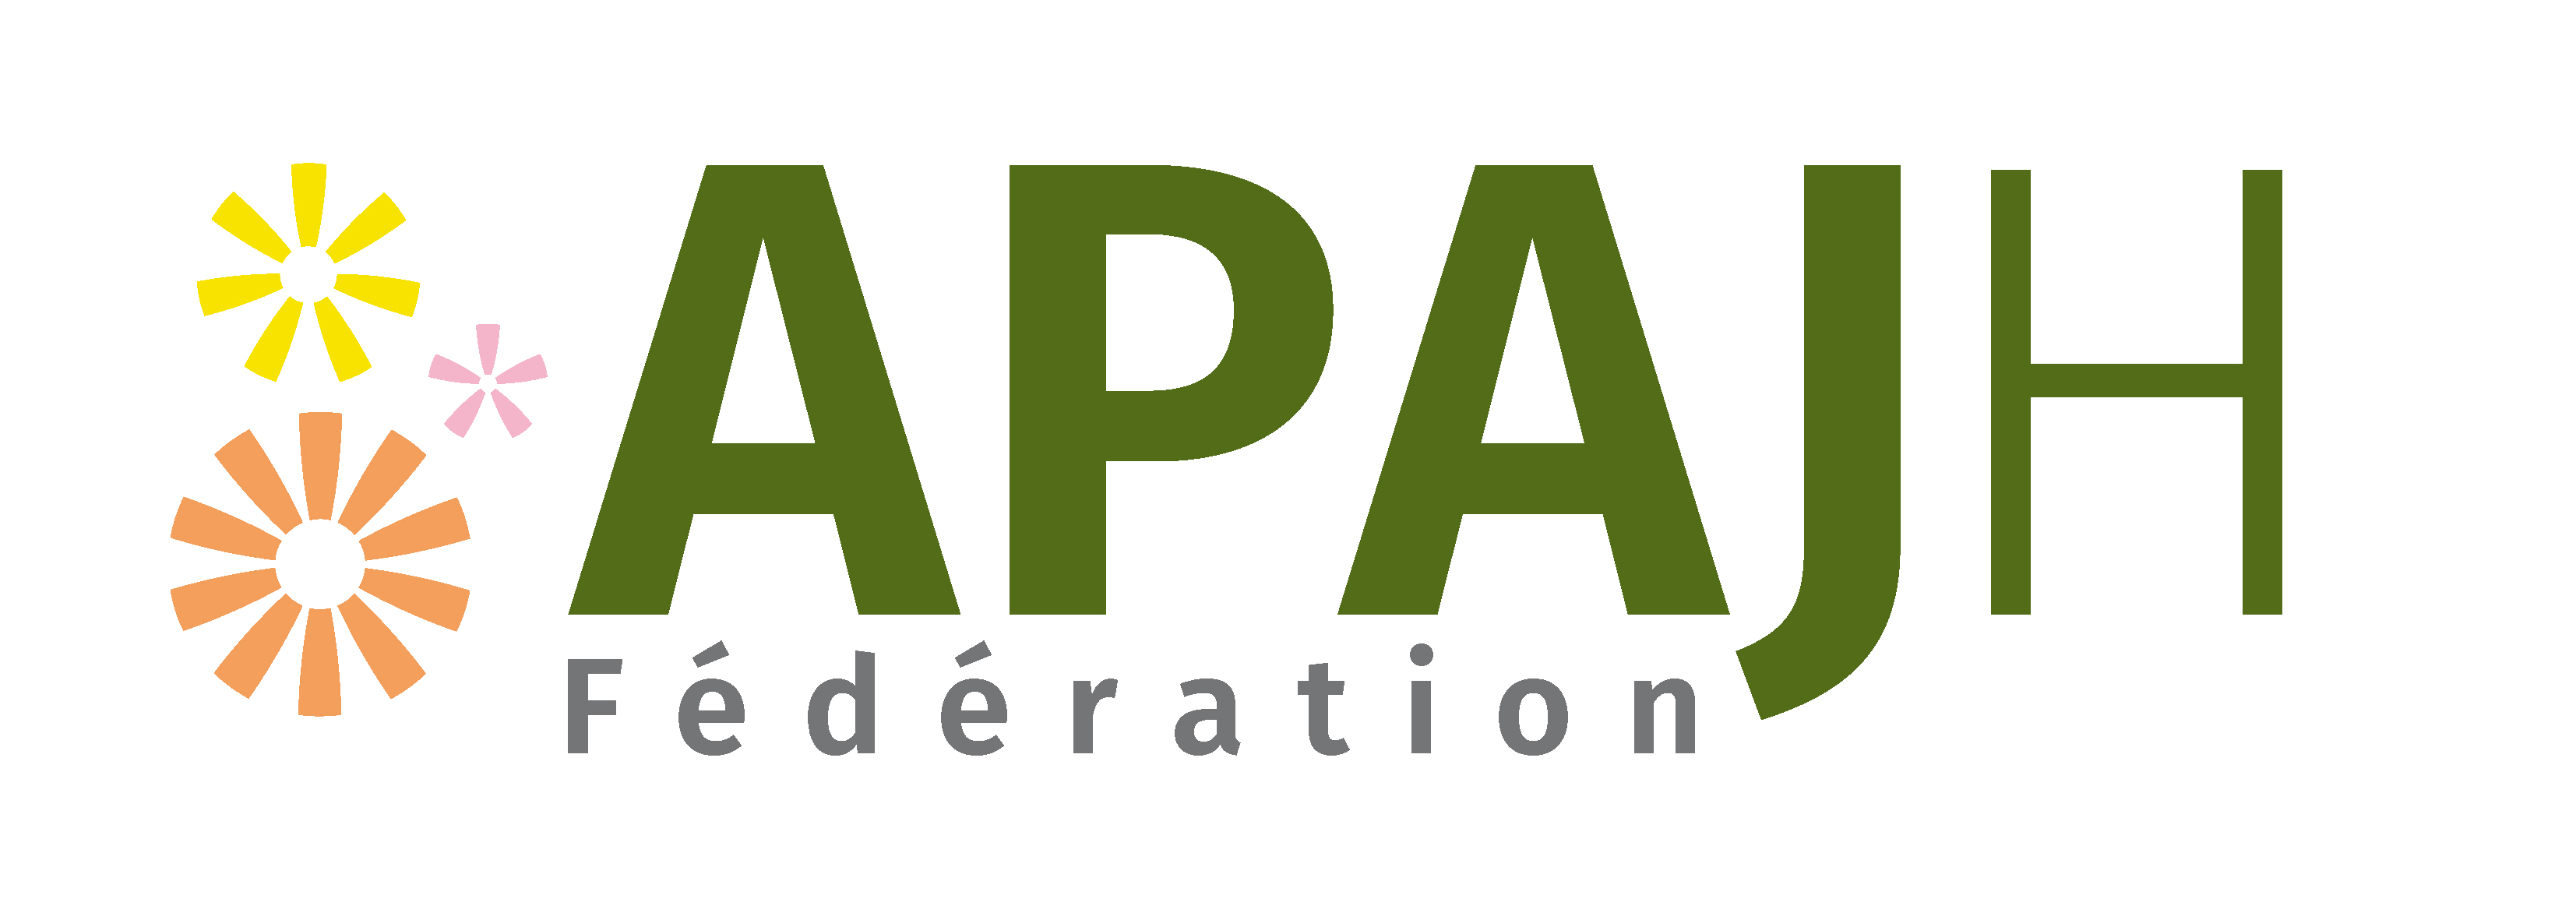 Logo Apajh